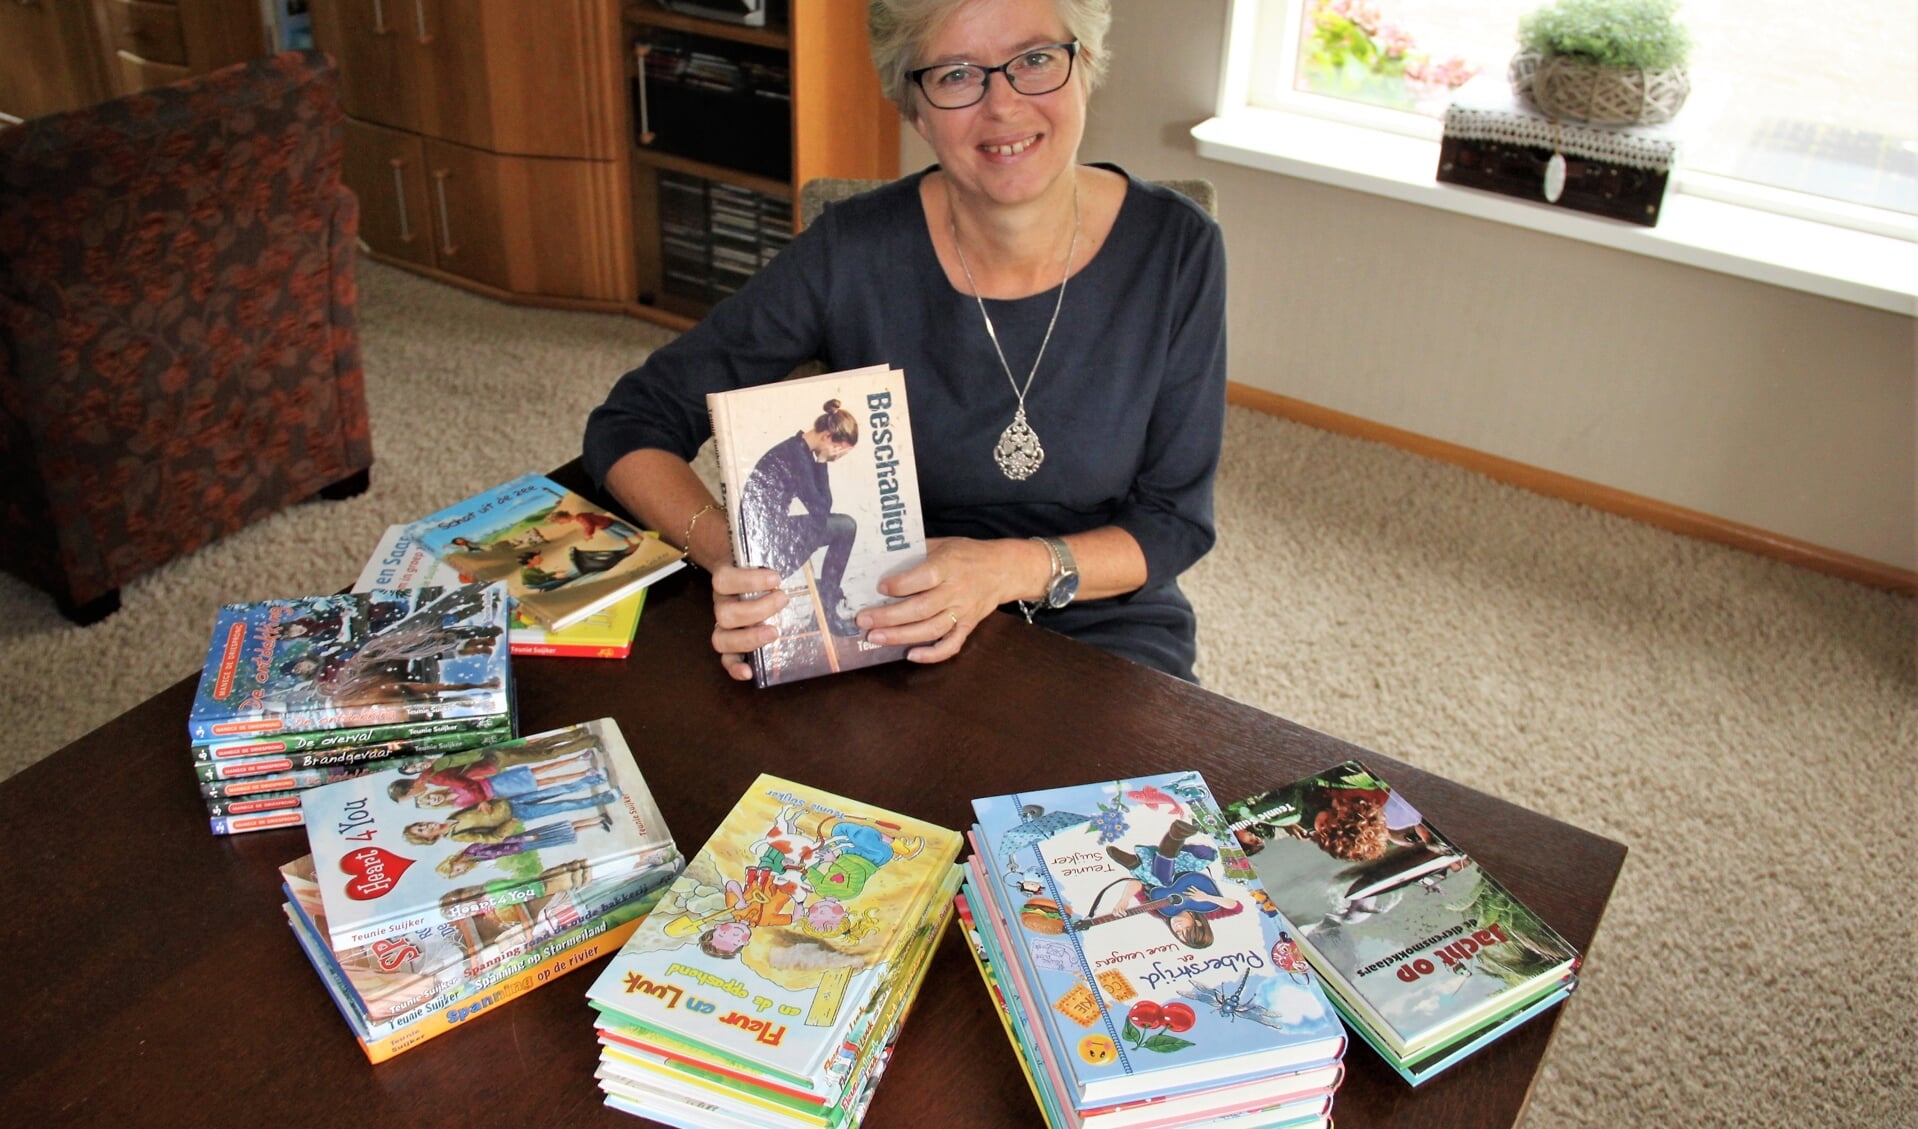 • Teunie Suijker met al haar boeken. In haar hand haar nieuwste boek: Beschadigd.